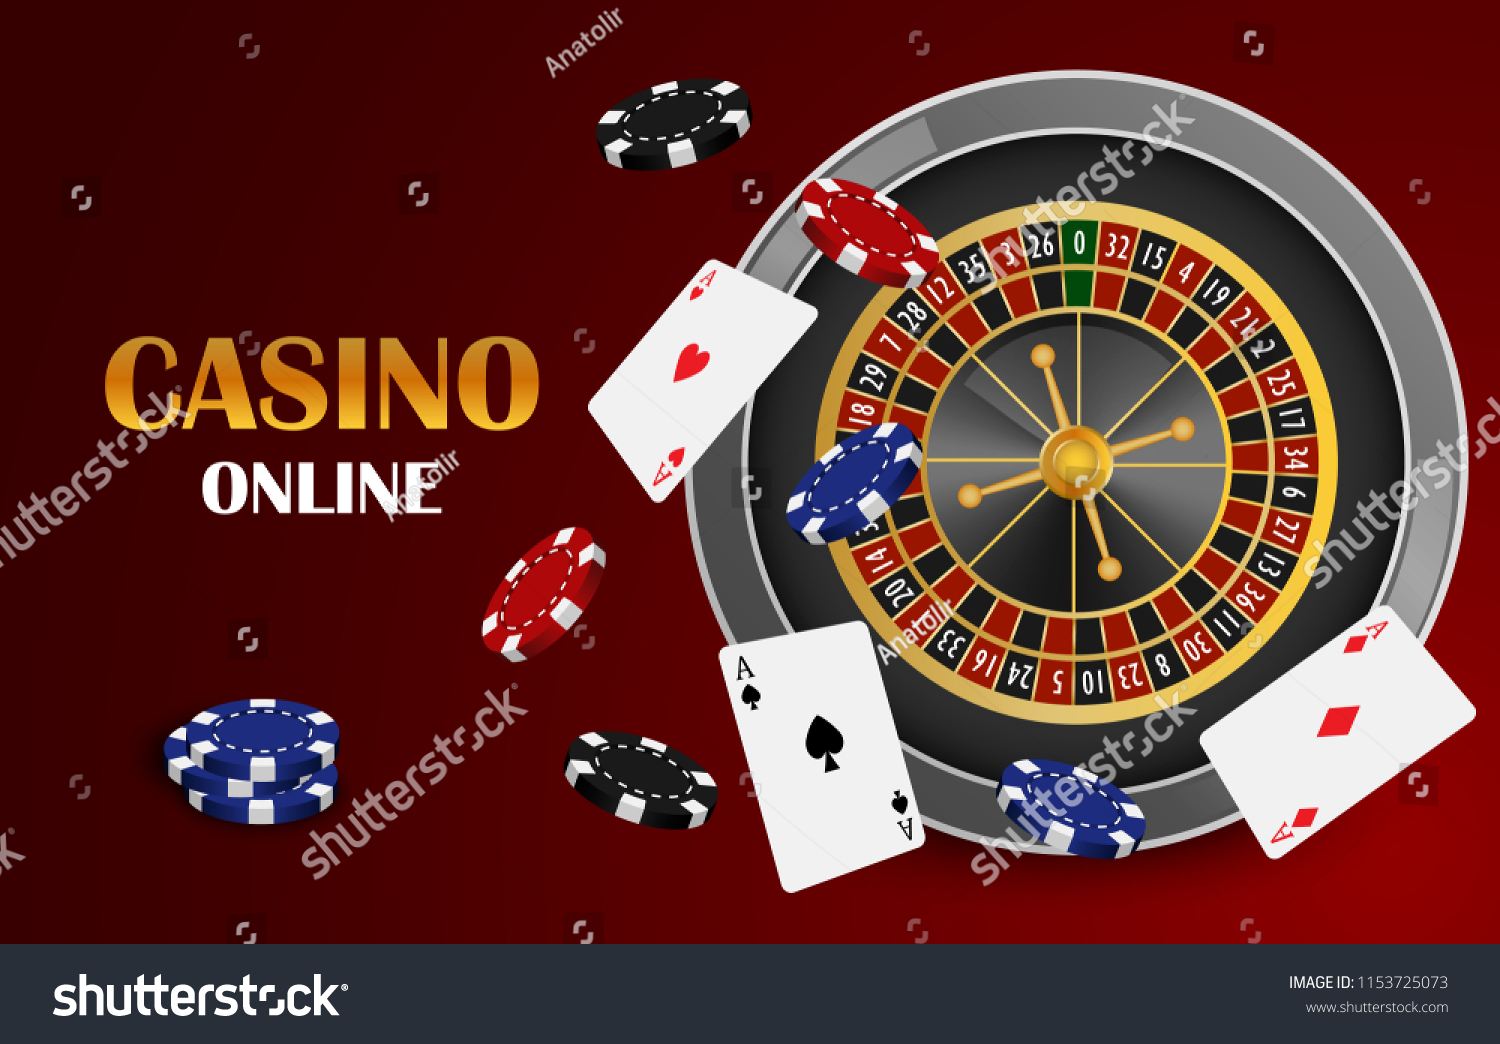 19 казино онлайн